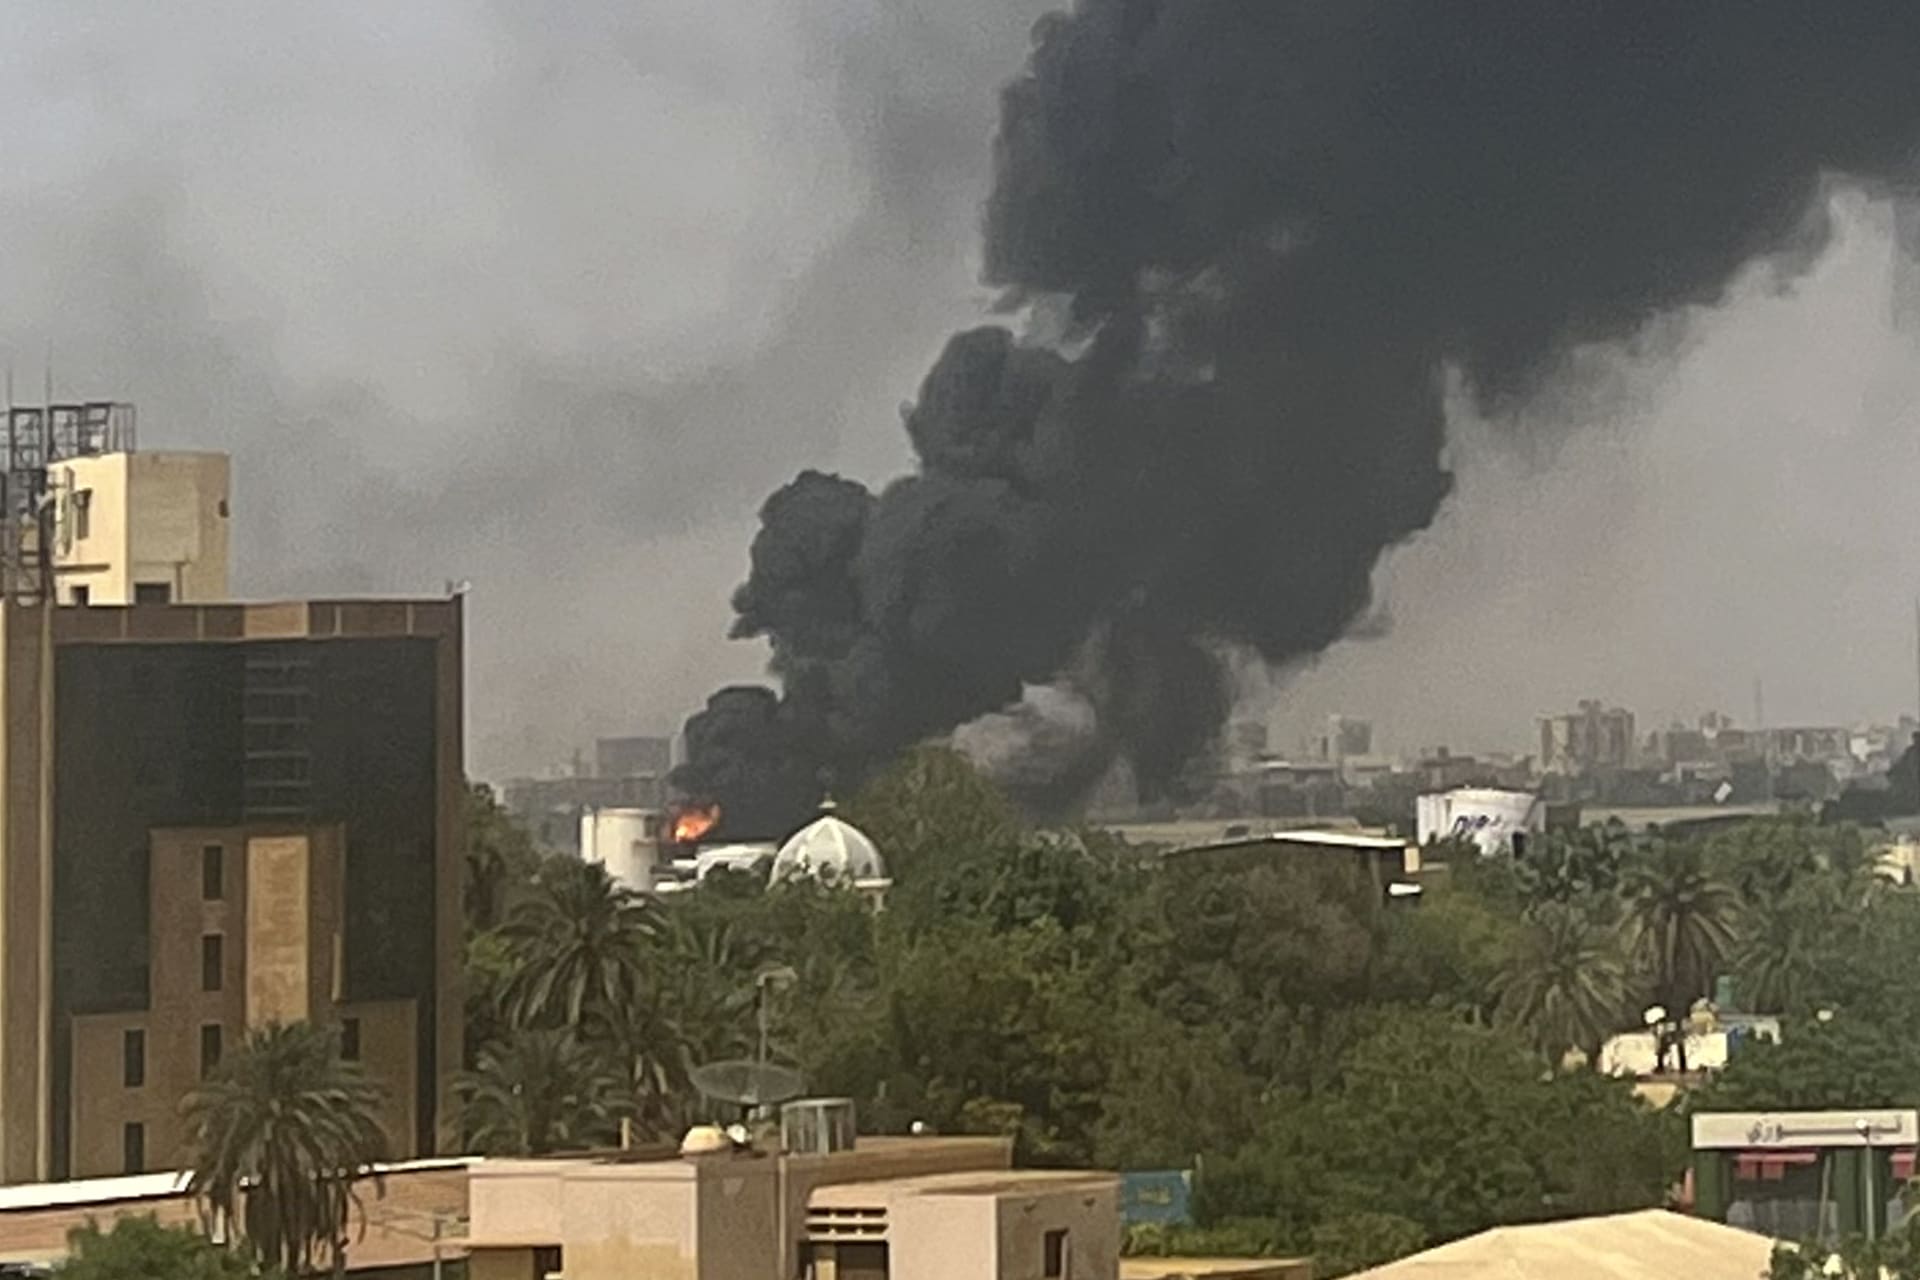 جالية اليمن في السودان في وضع مأساوي ومناشدات لإخراجهم من مناطق المواجهات